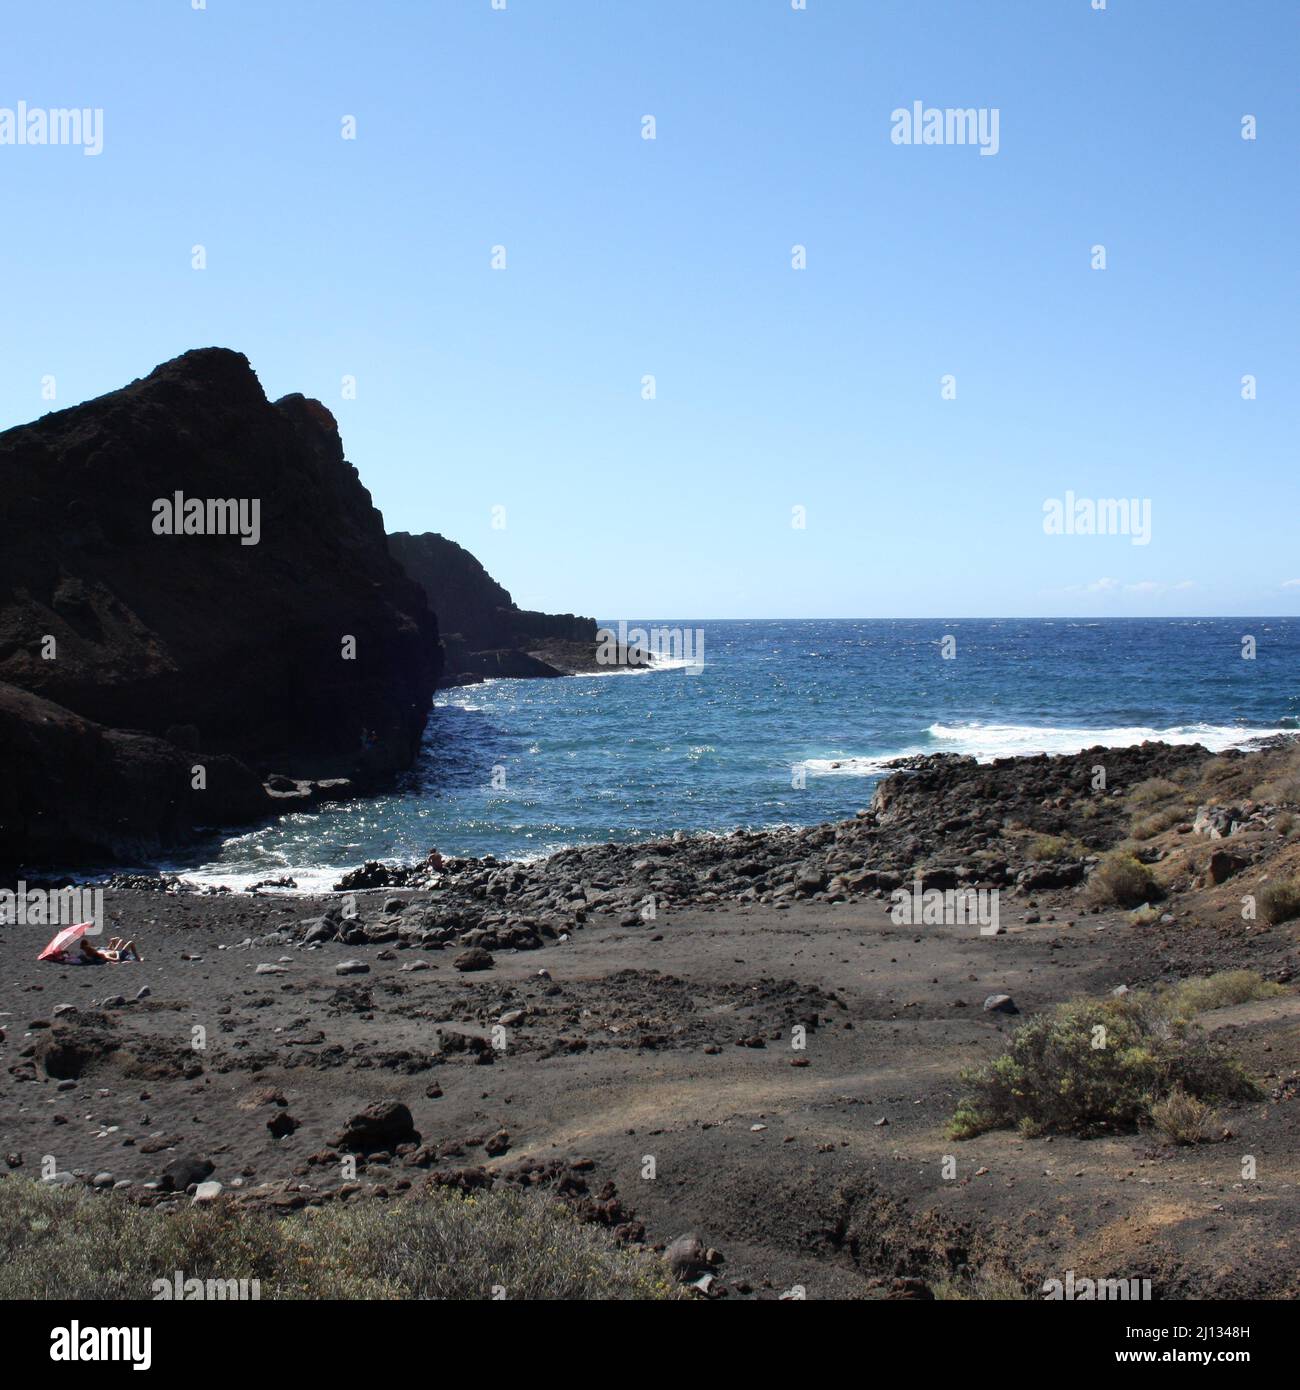 Felsenstrand bei Punta de Teno auf der kanarischen Insel teneriffa mit rauem Meer Stockfoto